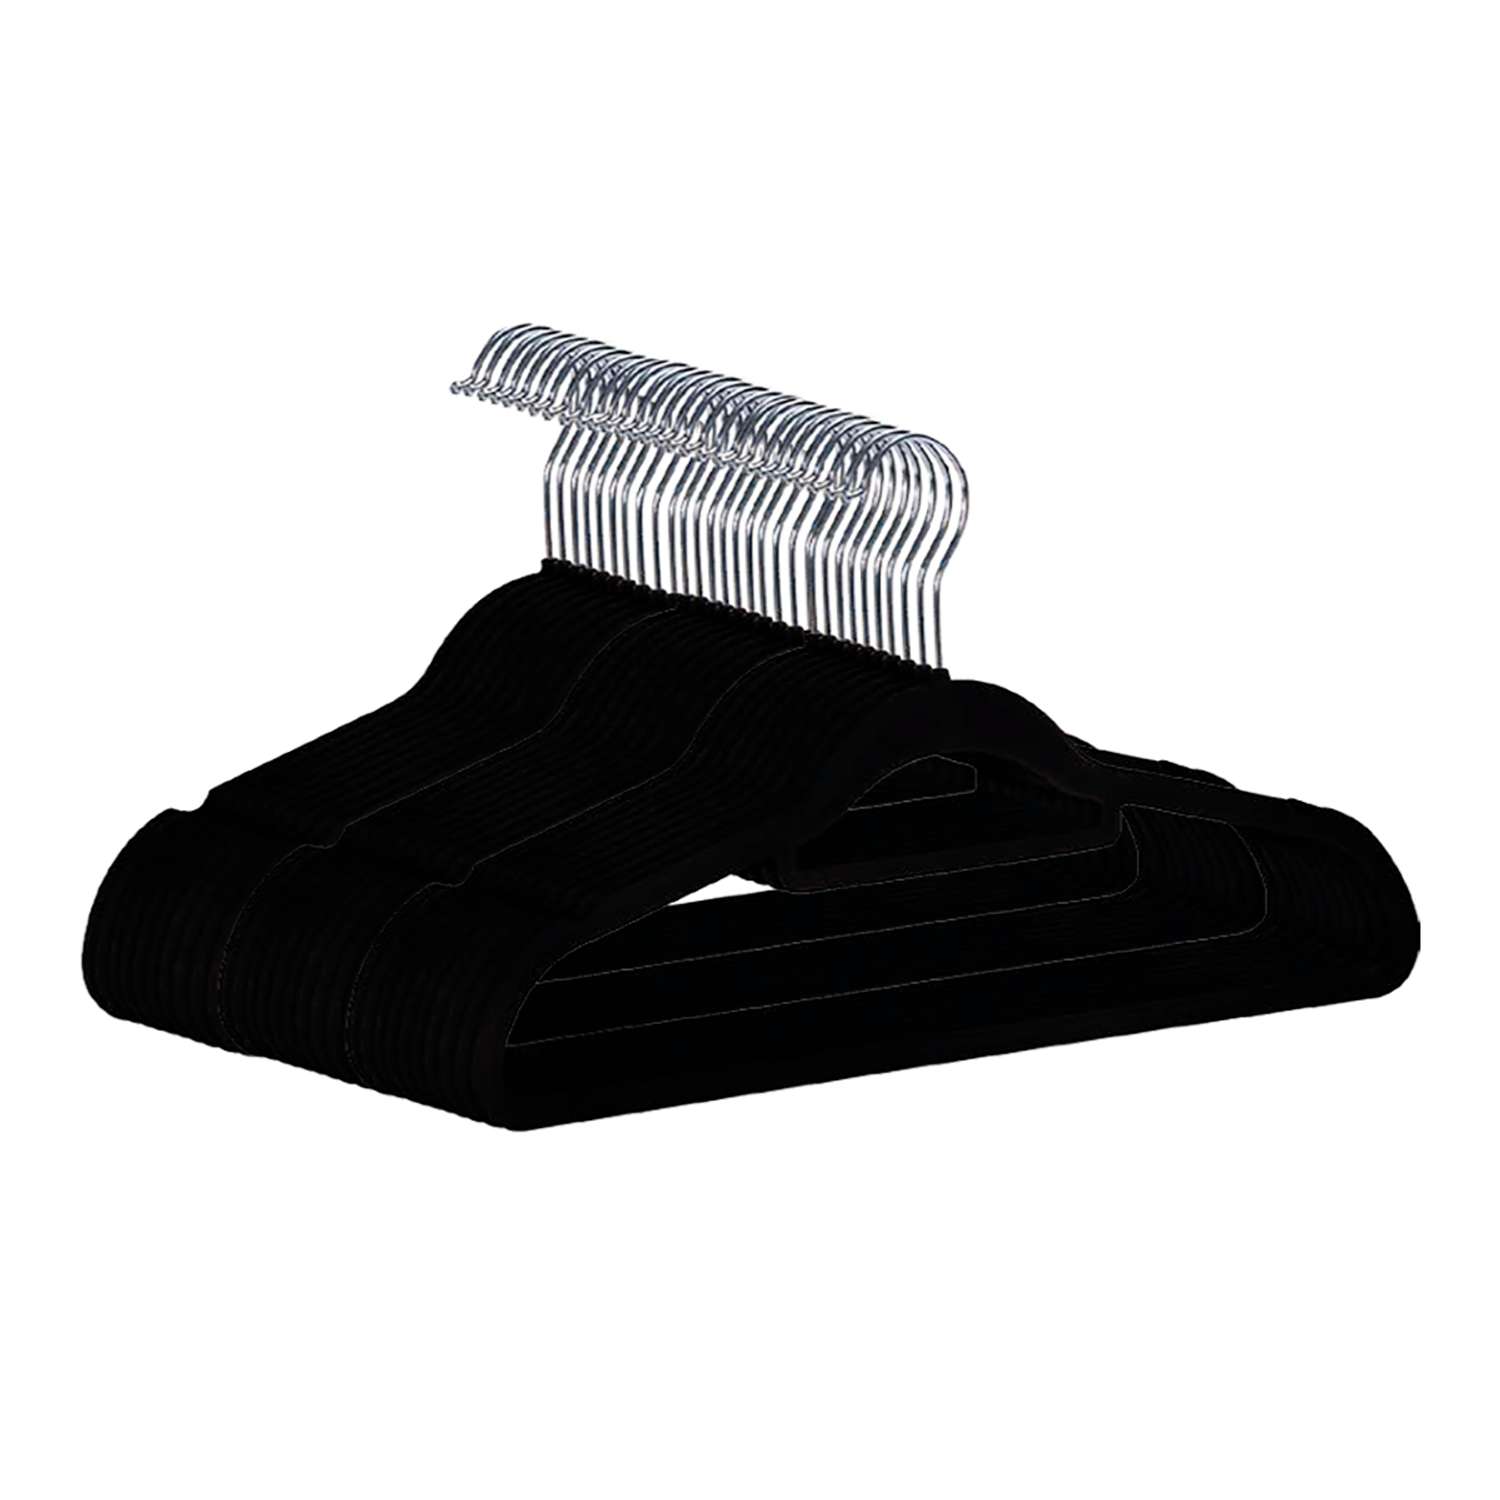 Вешалки-плечики Homsu вельветовые противоскользящие набор 35 штук черные - фото 1